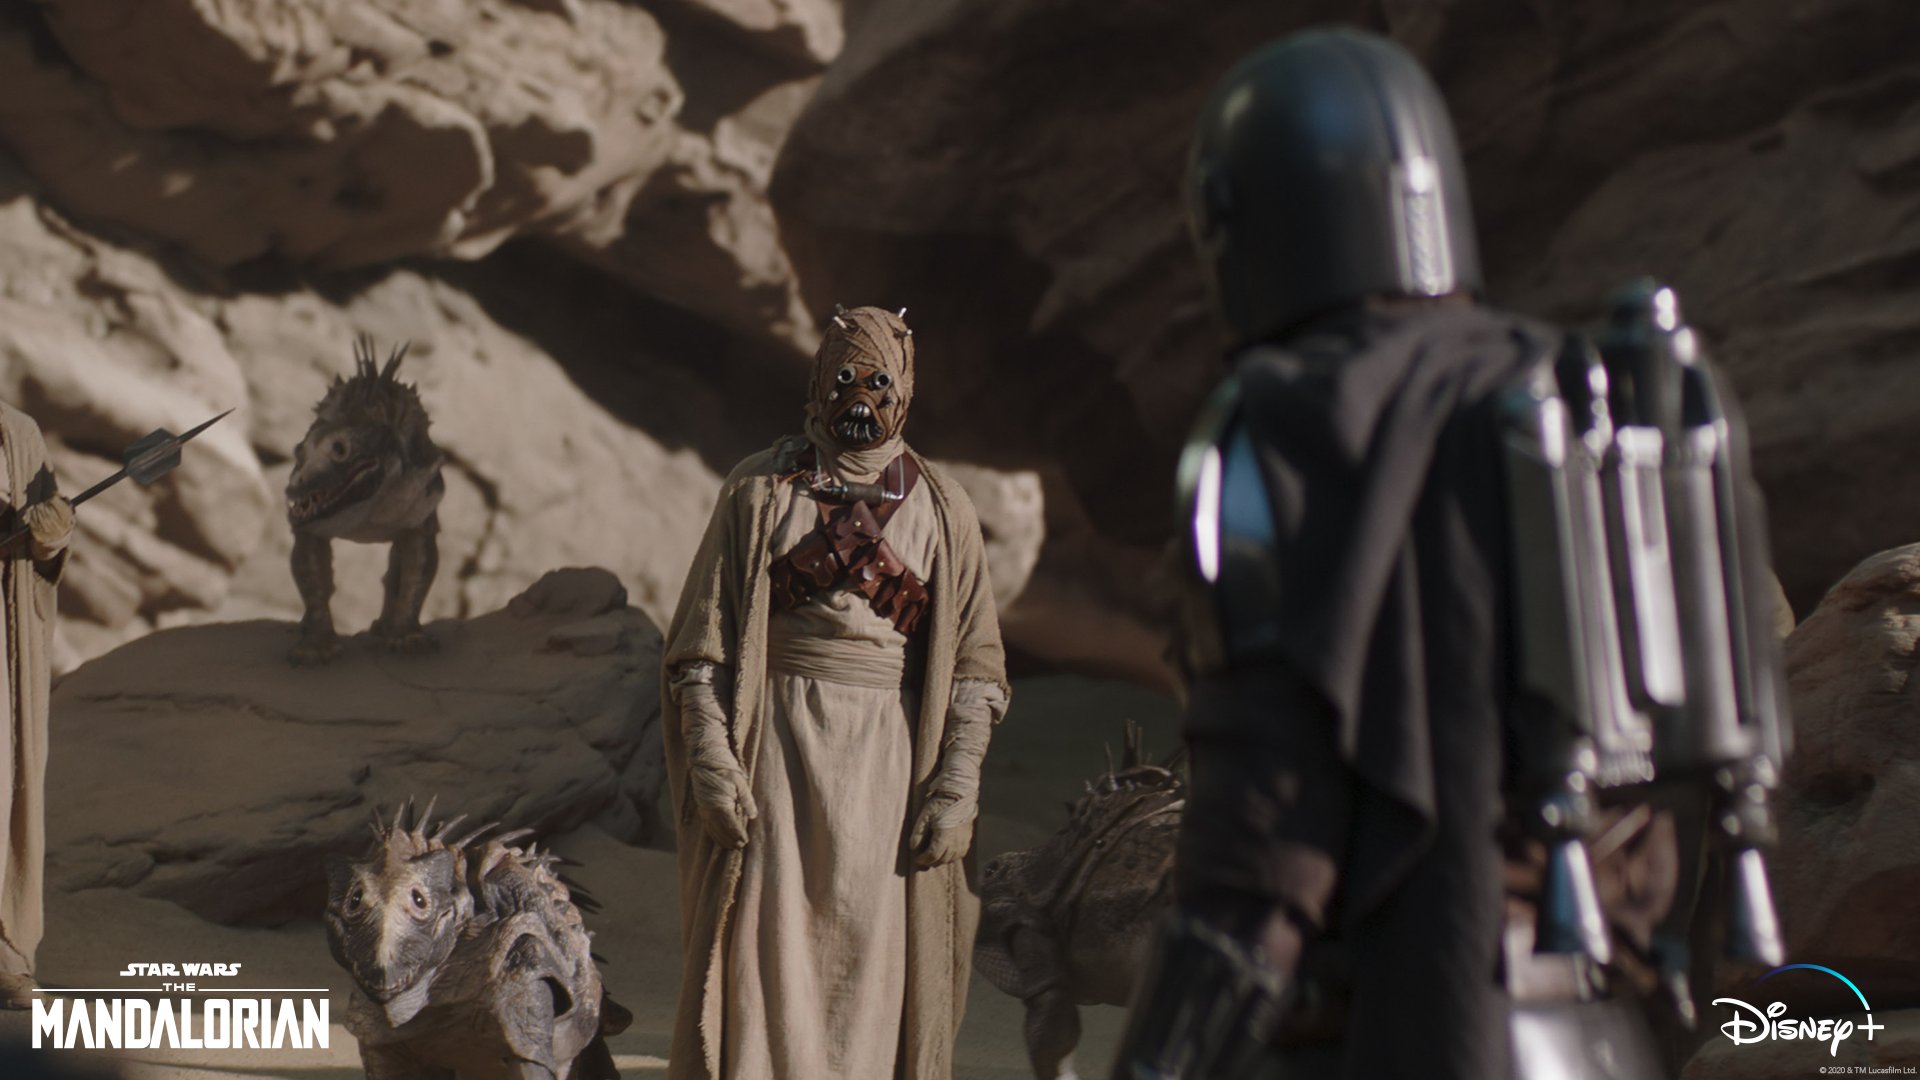 Cena da série The Mandalorian, em que Din Djarin, de costas à direita, conversa com uma criatura do Povo da Areia, que o encara, ao centro. Os dois estão próximos a pedras e há dois animais típicos do Povo, à esquerda.